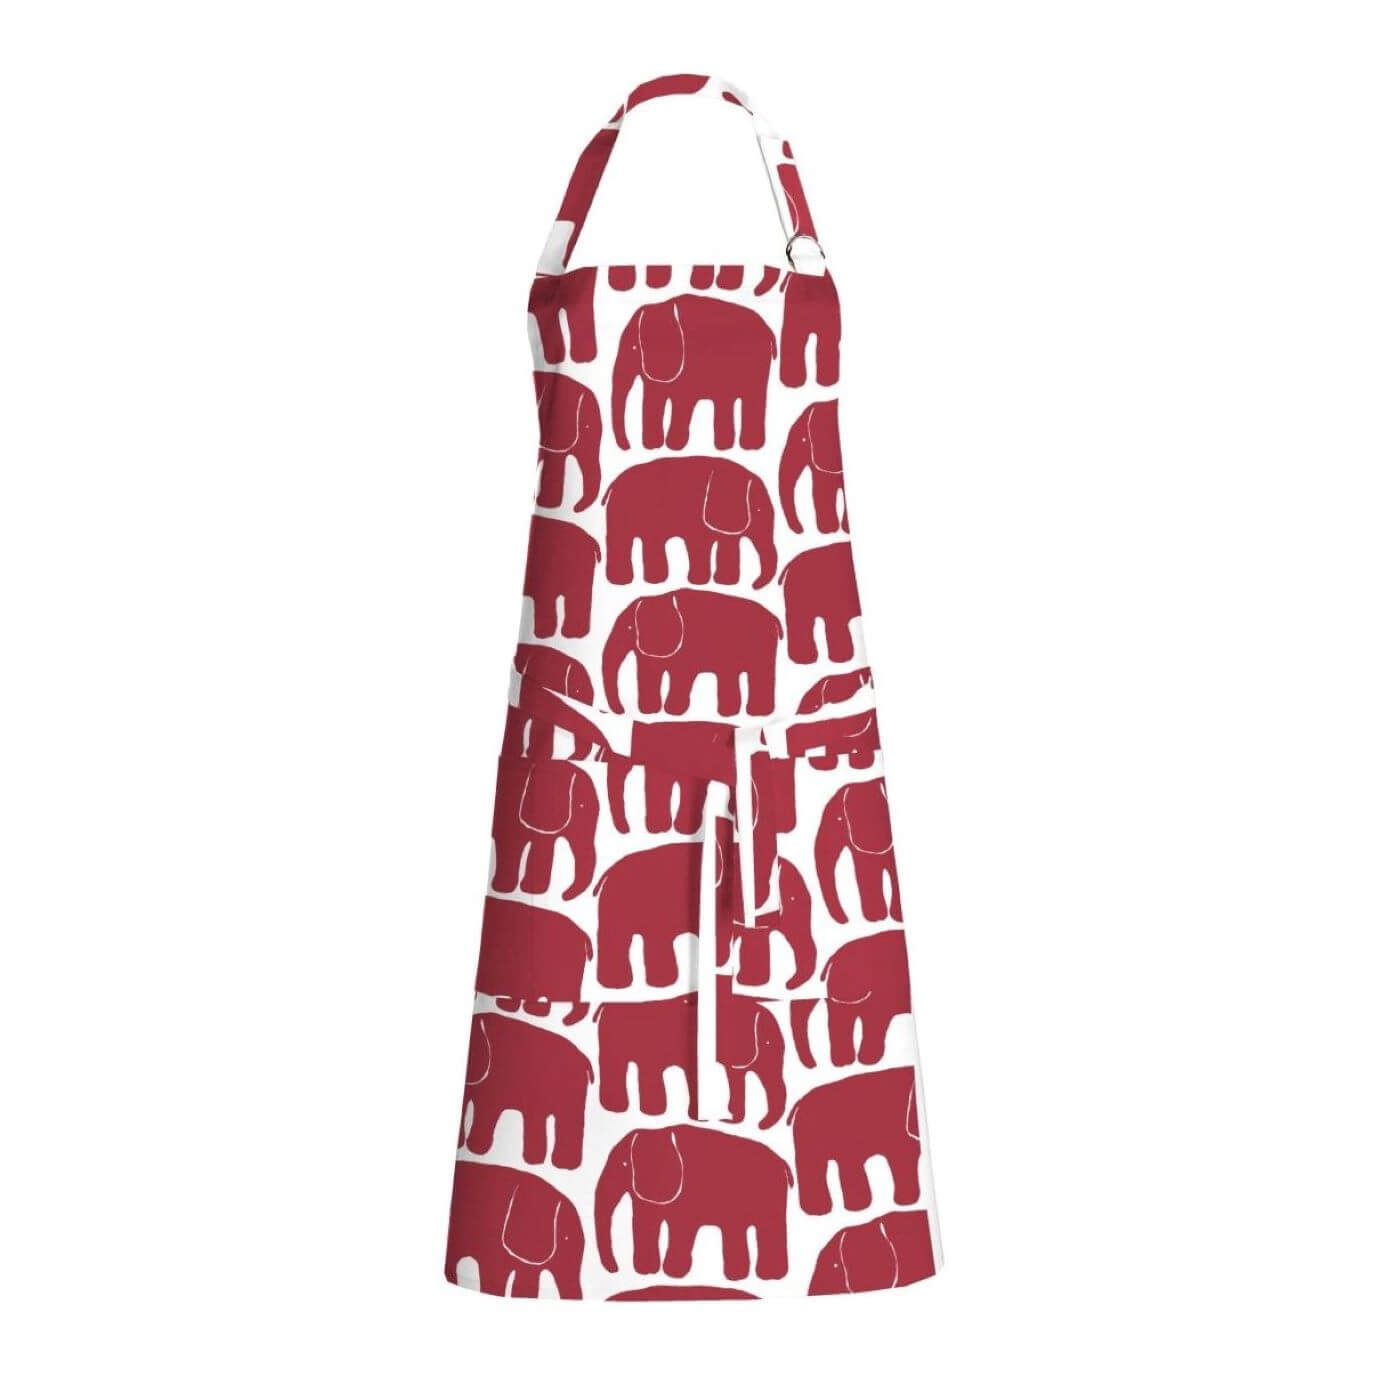 Fartuch kuchenny bawełniany ELEFANTTI biały w nowoczesne graficzne uproszczone malowane czerwone słonie. Fartuch bawełniany biało czerwony damski lub męski widoczna w całości. Skandynawski design